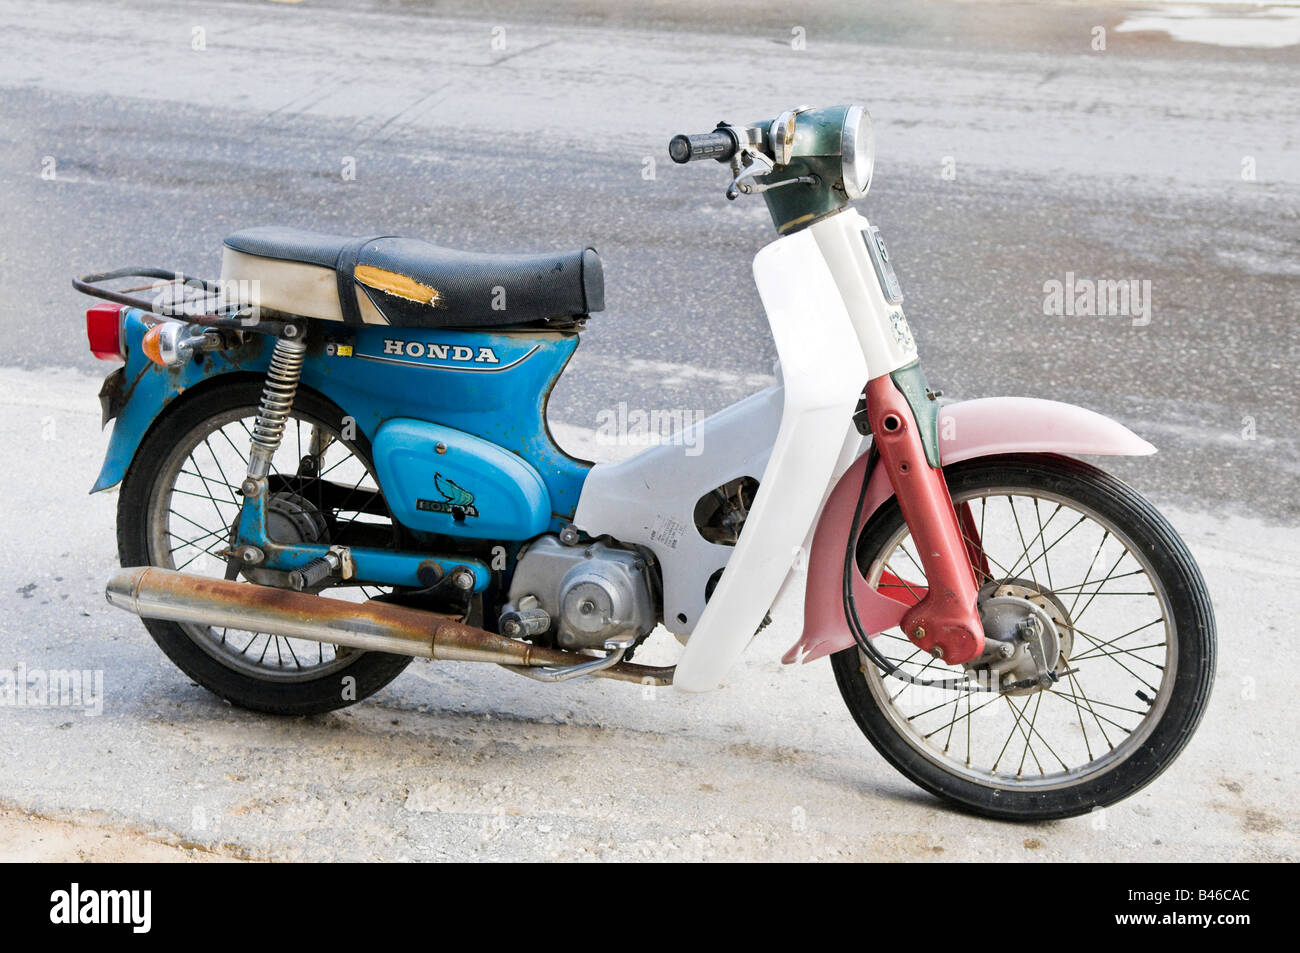 Honda scooter immagini e fotografie stock ad alta risoluzione - Alamy